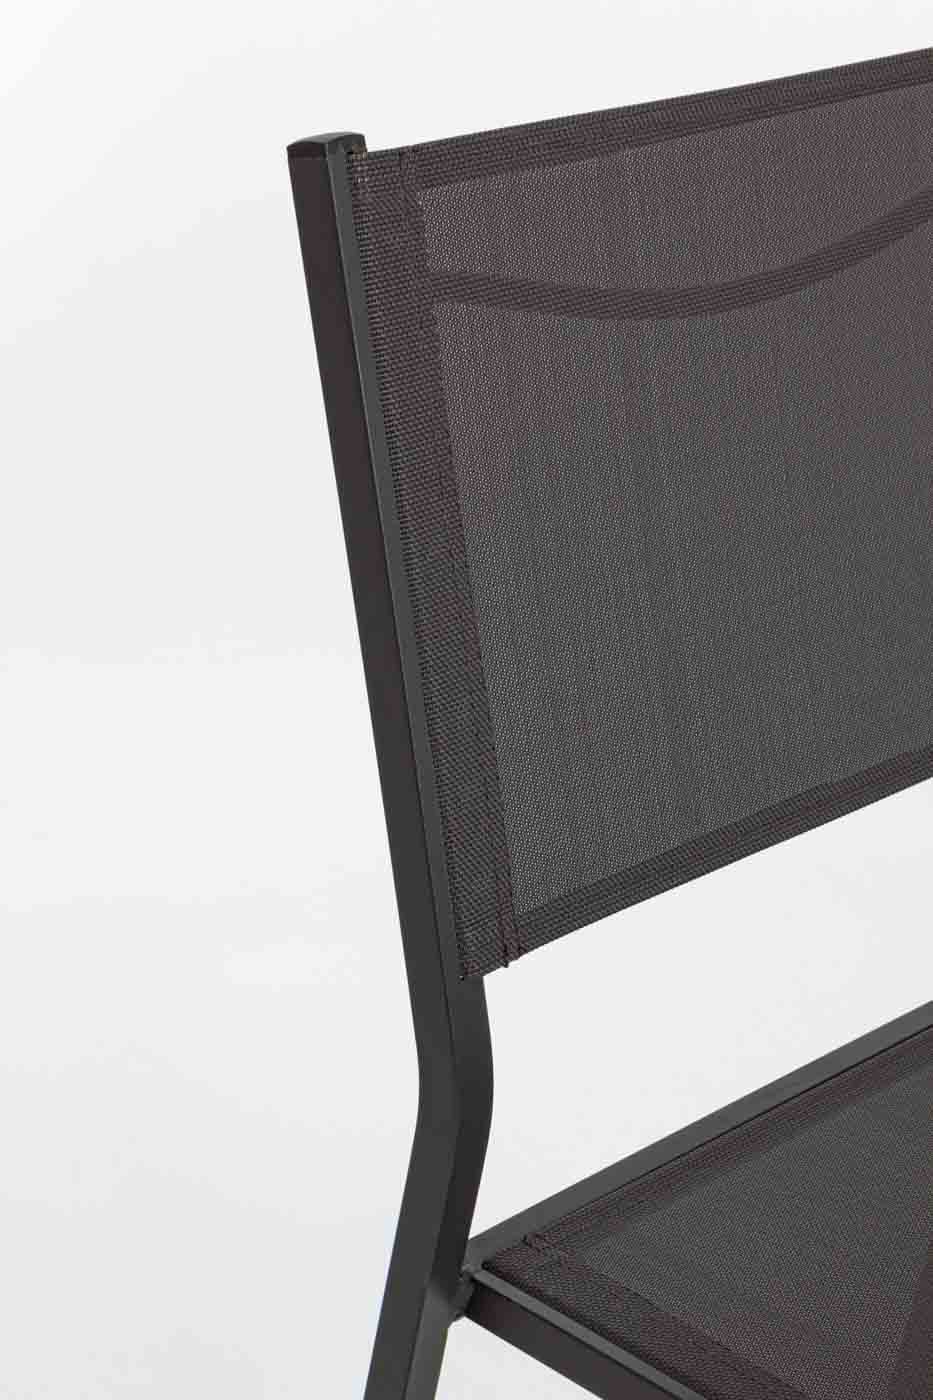 Gartenstuhl Hilde ohne Armlehne und stapelbar. Gestell aus Aluminium und Textilene als Sitzfläche